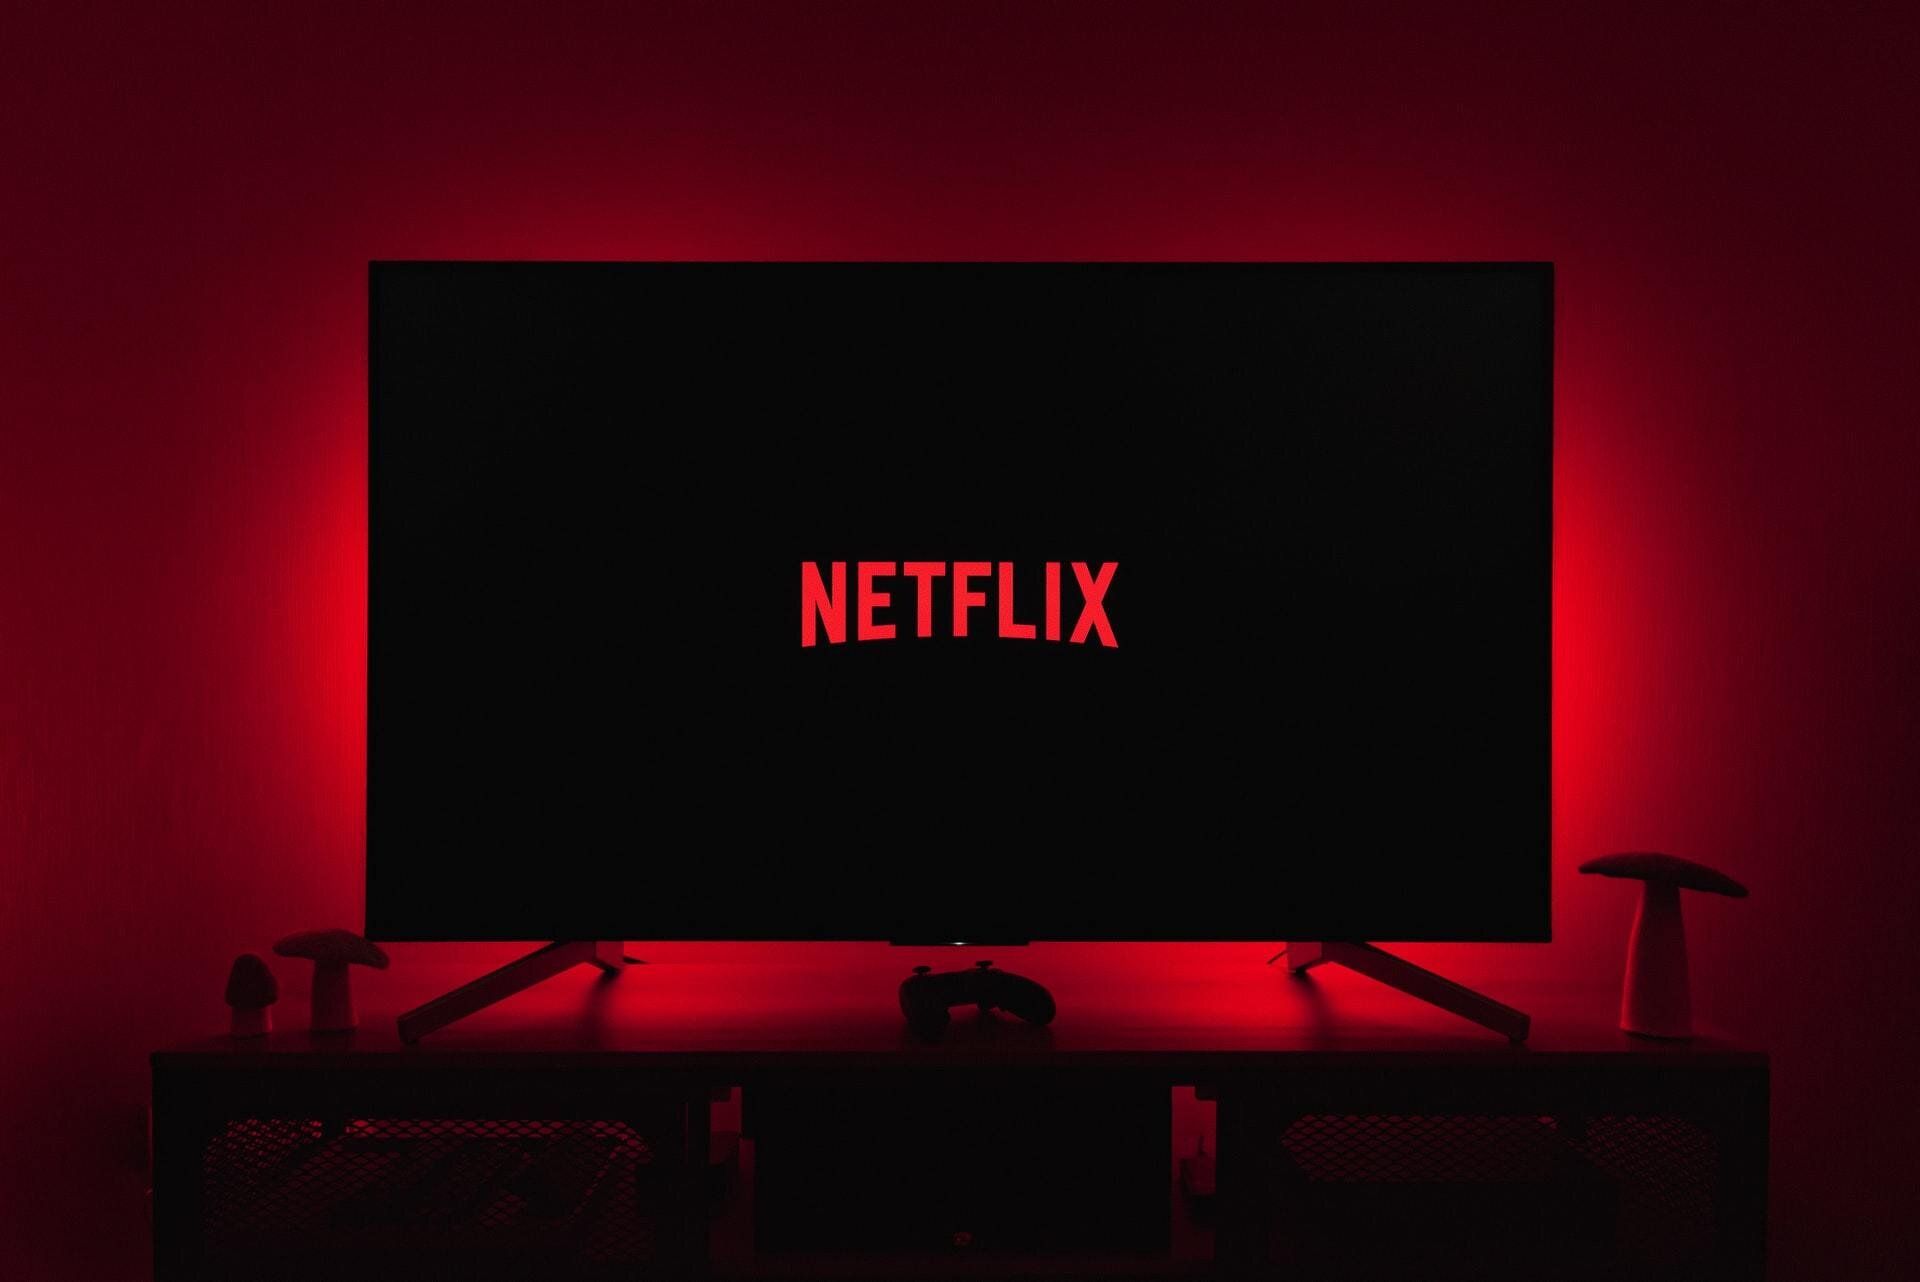 Если вы не входите в свою учетную запись Netflix в течение месяца, вы получите временный код